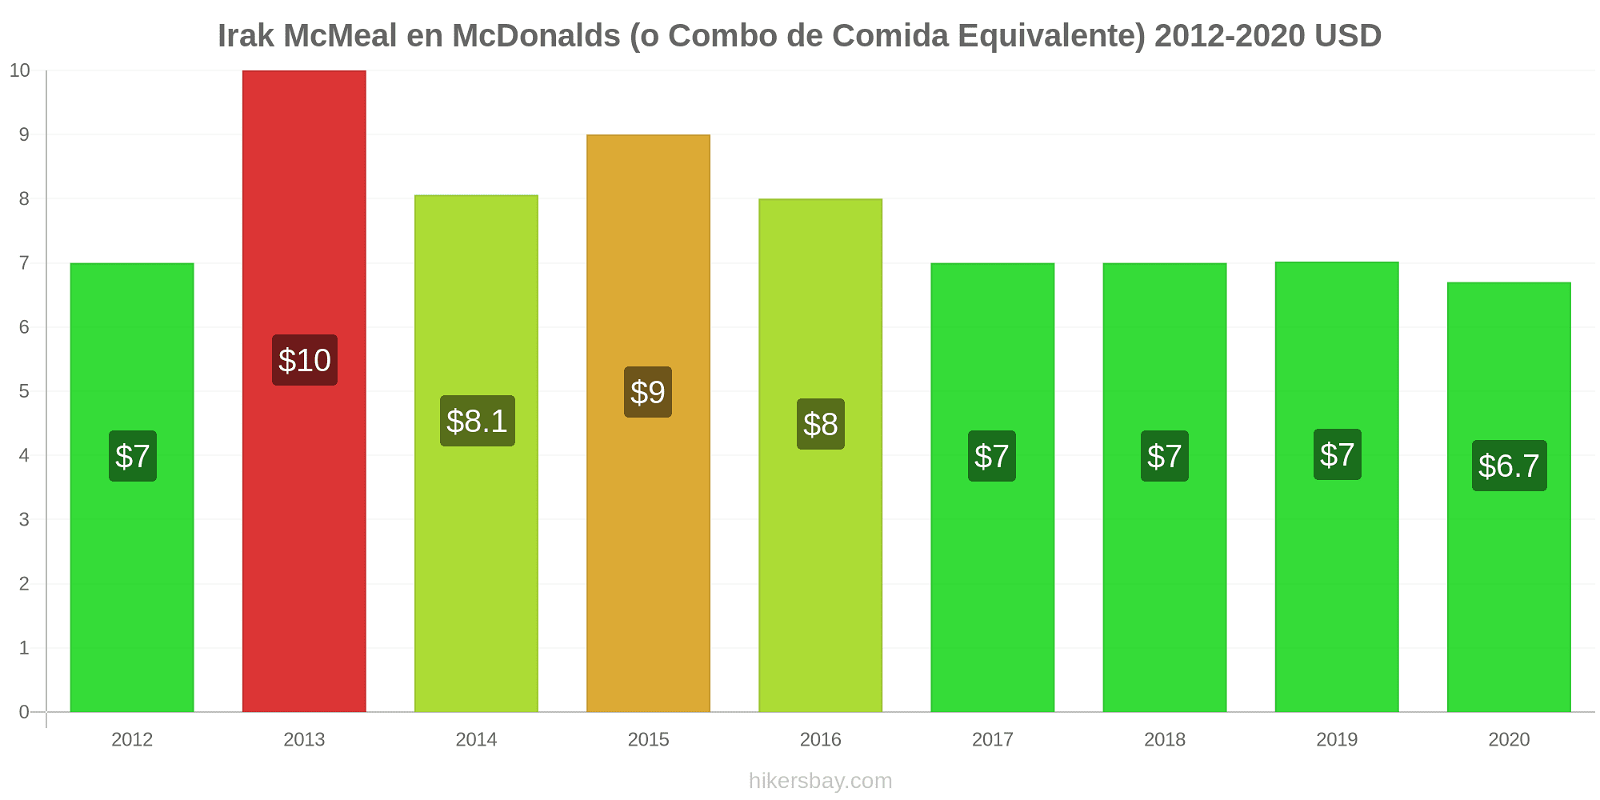 Irak cambios de precios McMeal en McDonalds (o menú equivalente) hikersbay.com